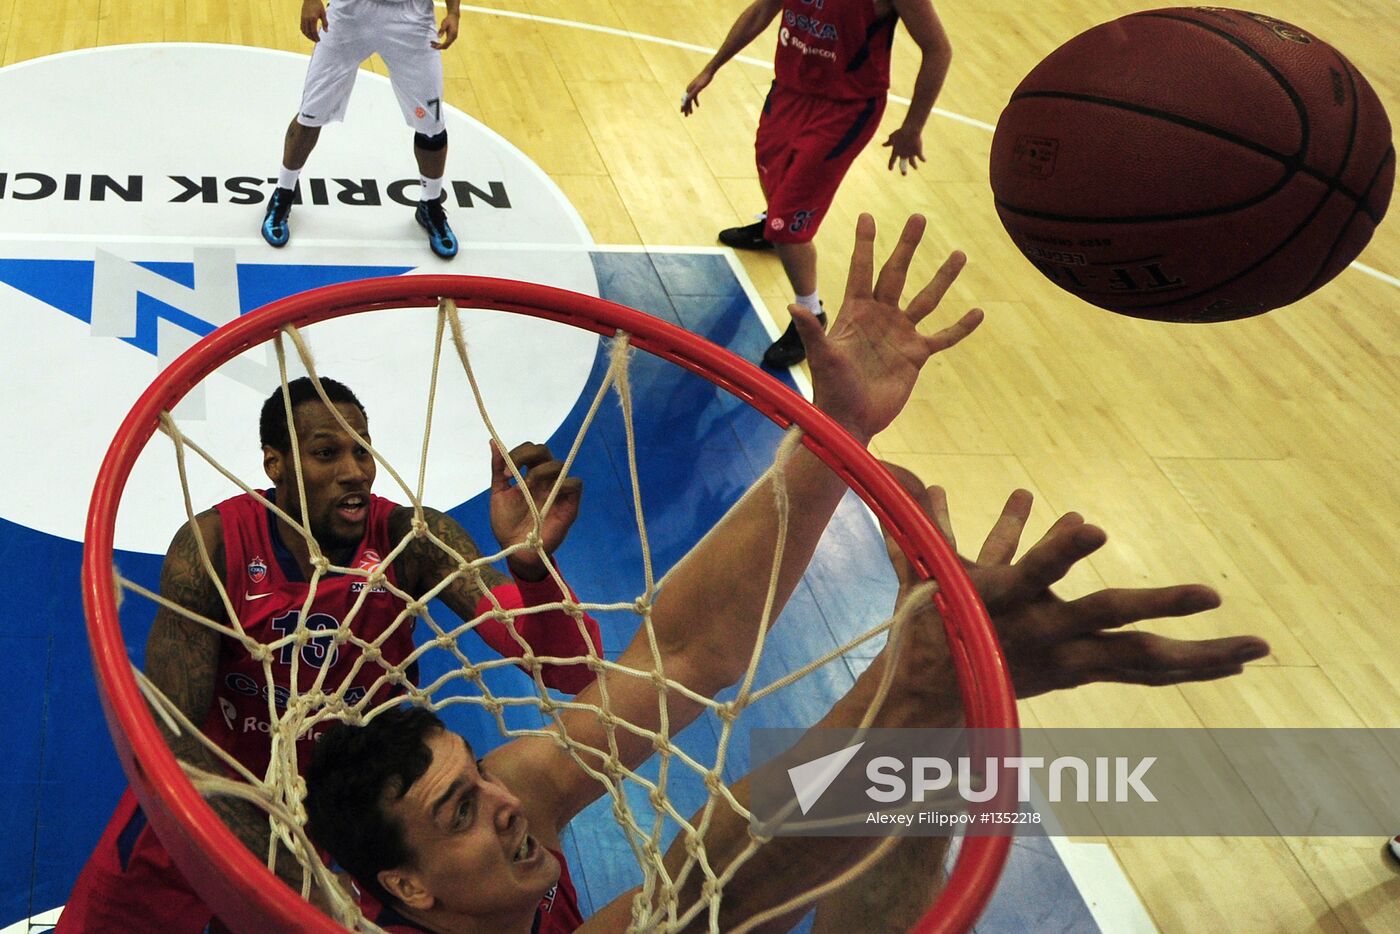 Basketball Euroleague. CSKA vs. Unicaja